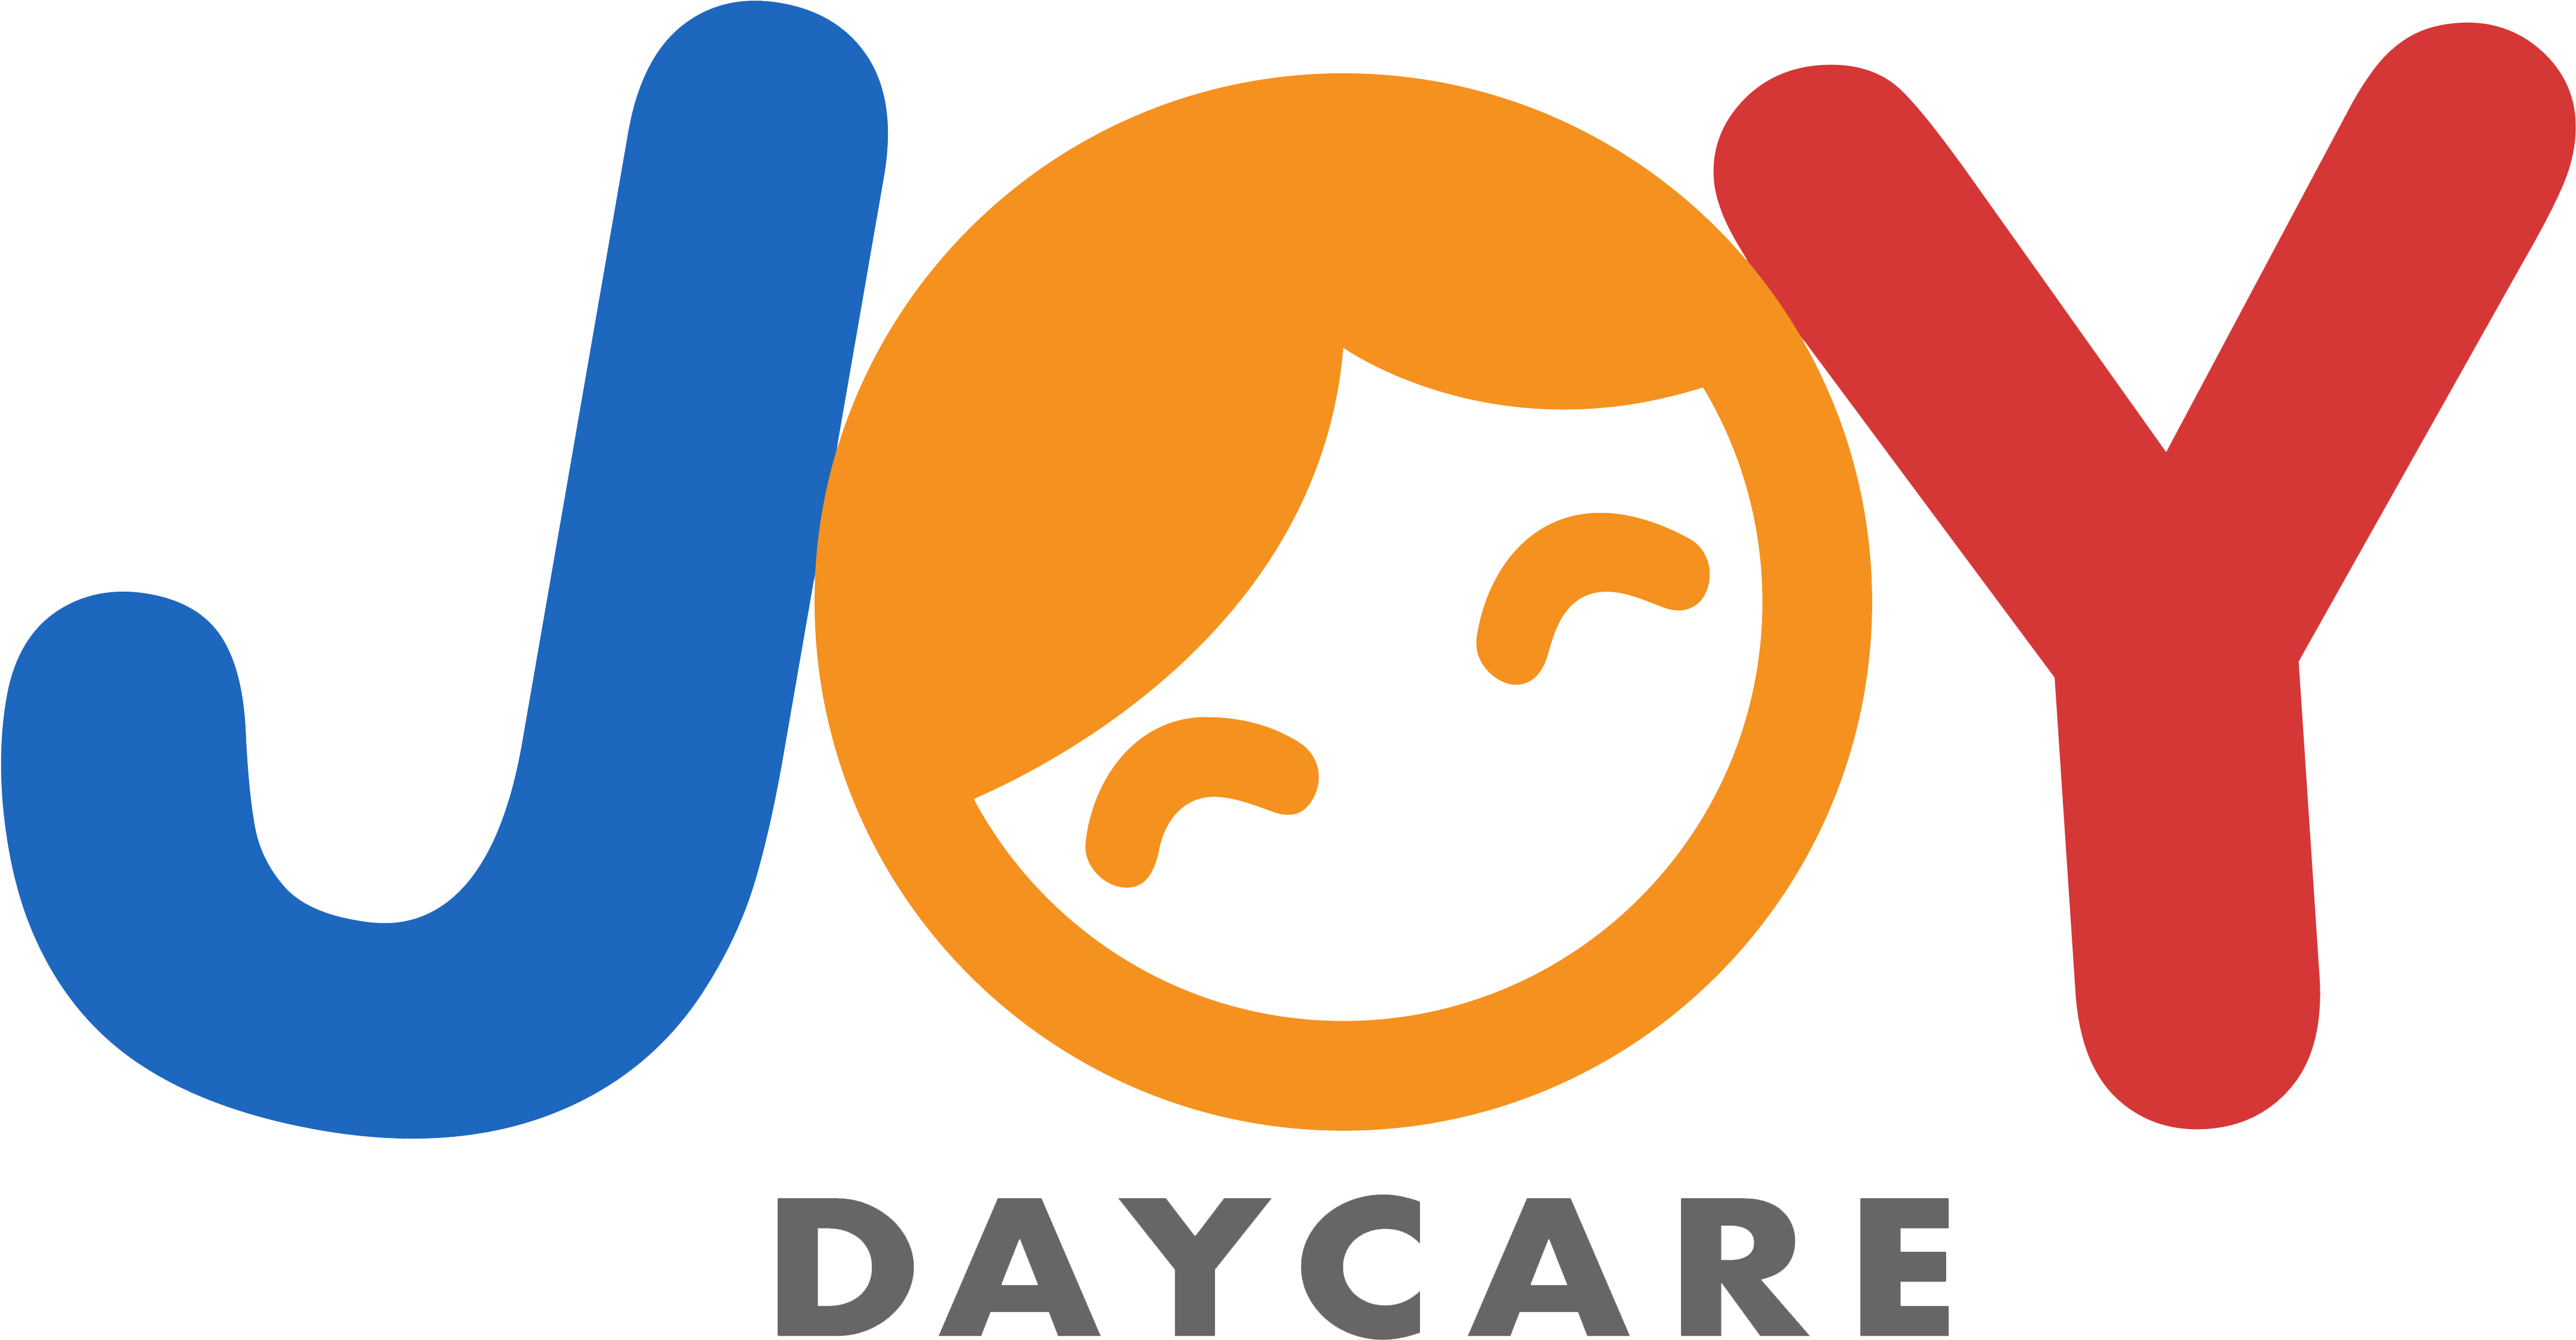 童之乐幼儿园joy Daycare - Flushing Daycare 法拉盛幼儿园 (5760x3240)